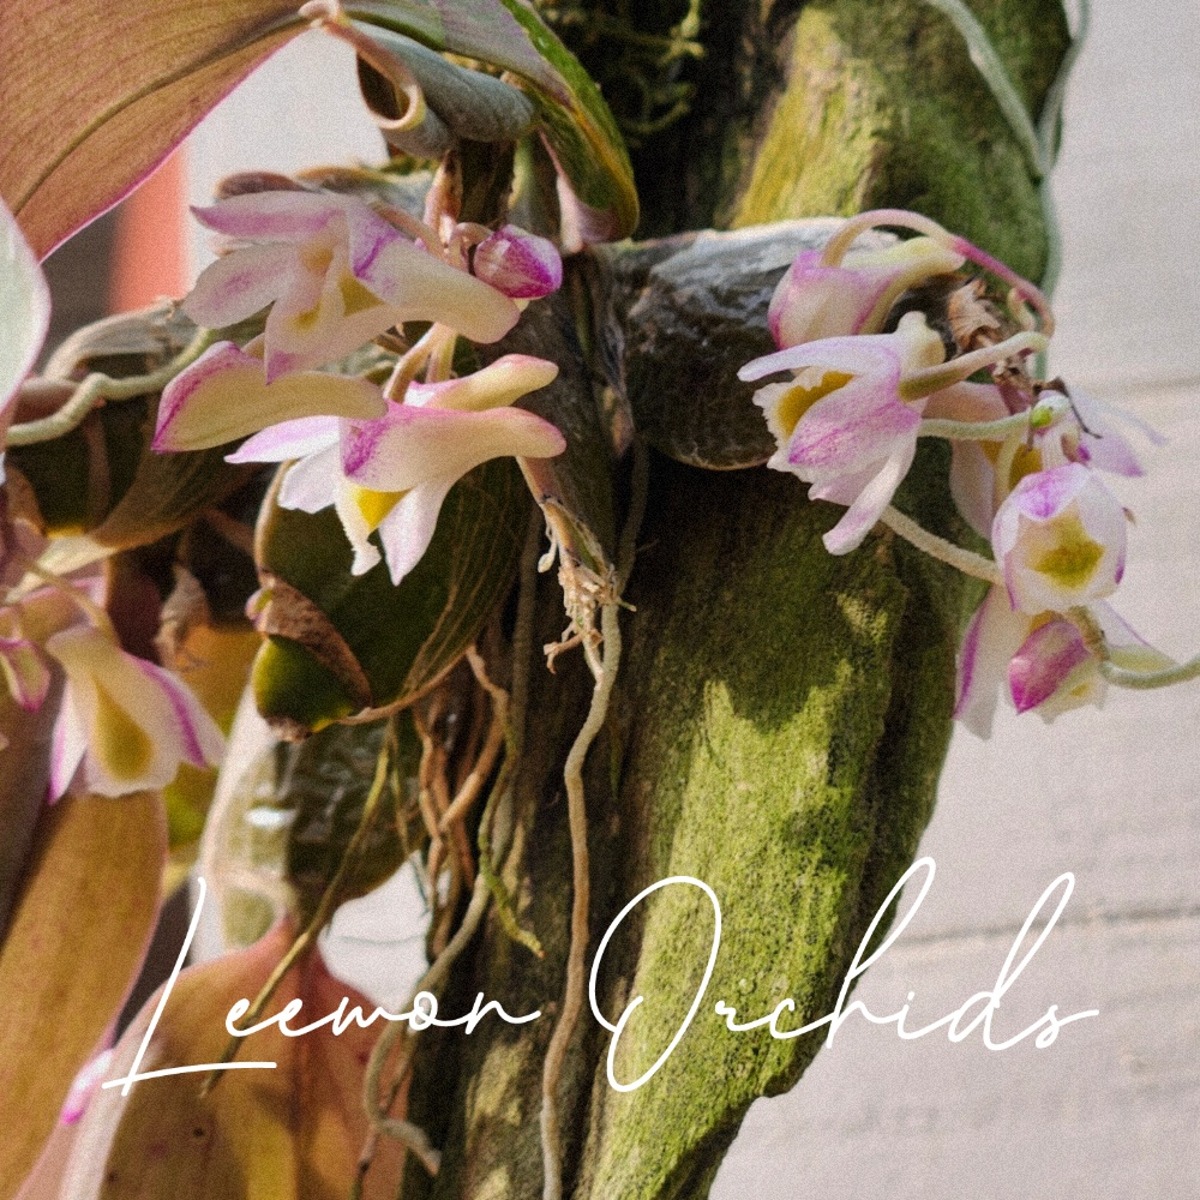 덴드로비움 수도라멜라툼 Dendrobium pseudolamellatum (목부작/ 꽃대O/ 온라인 한정재고: 1)